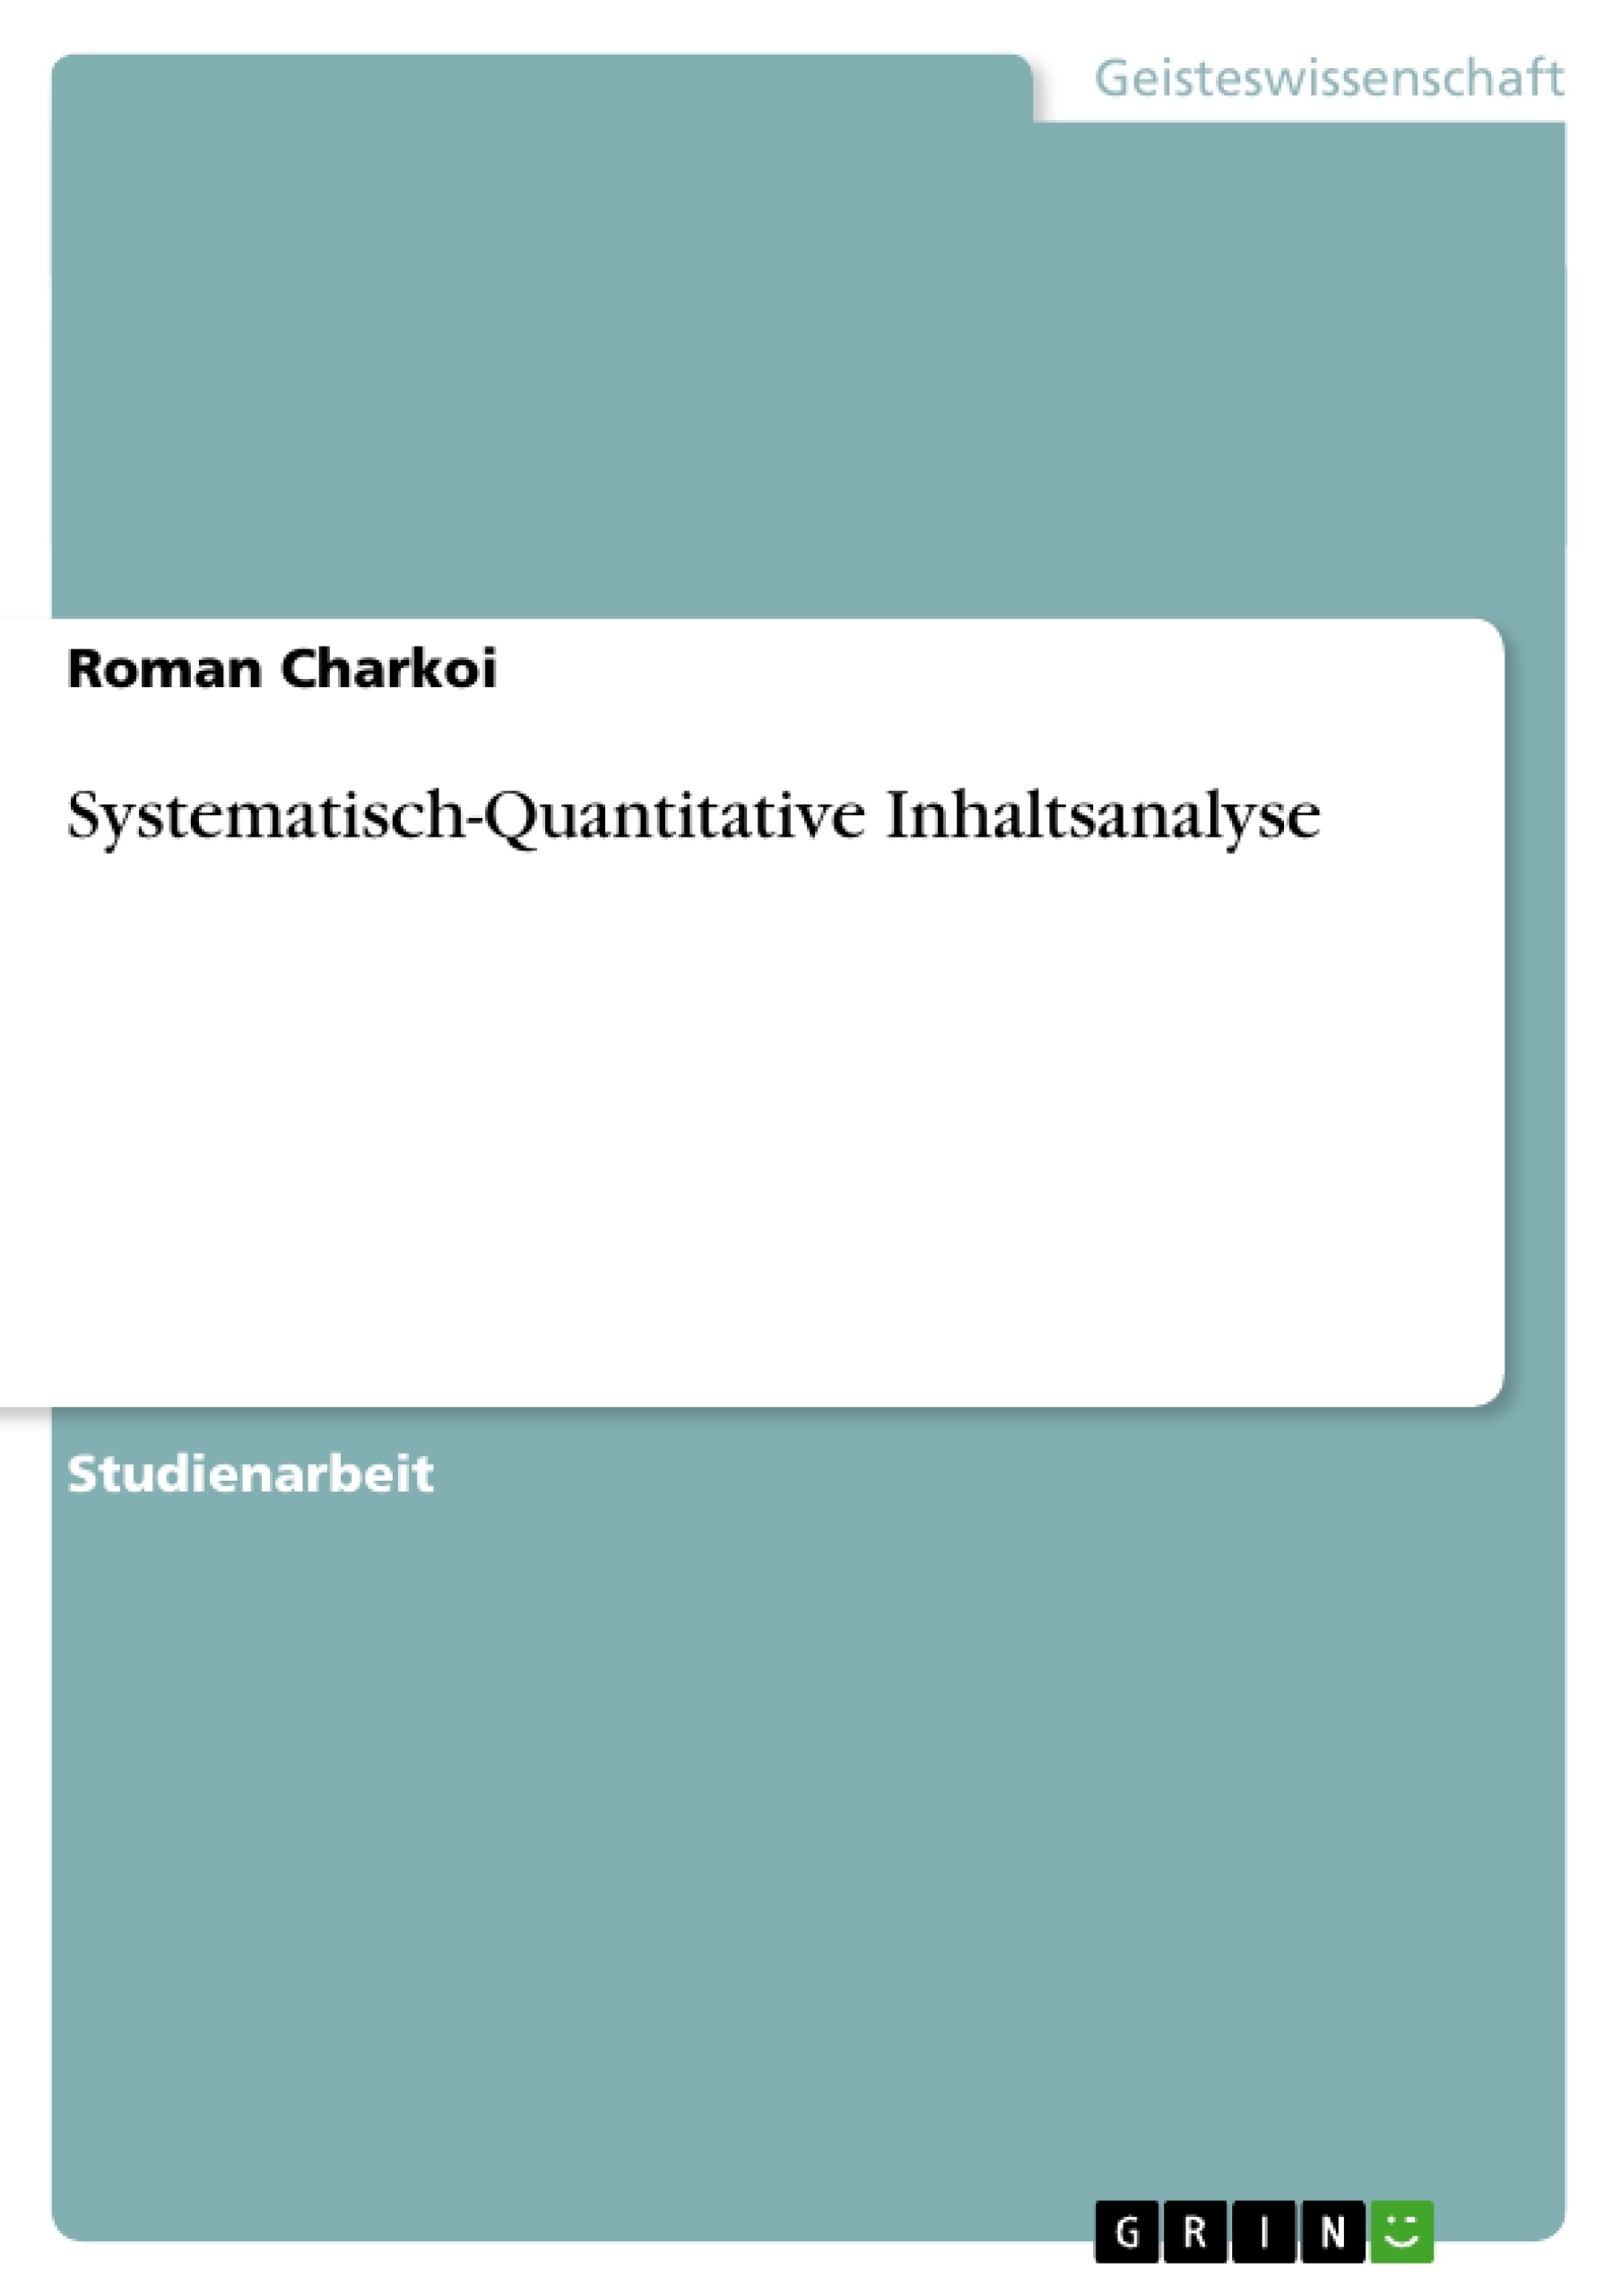 Título: Systematisch-Quantitative Inhaltsanalyse